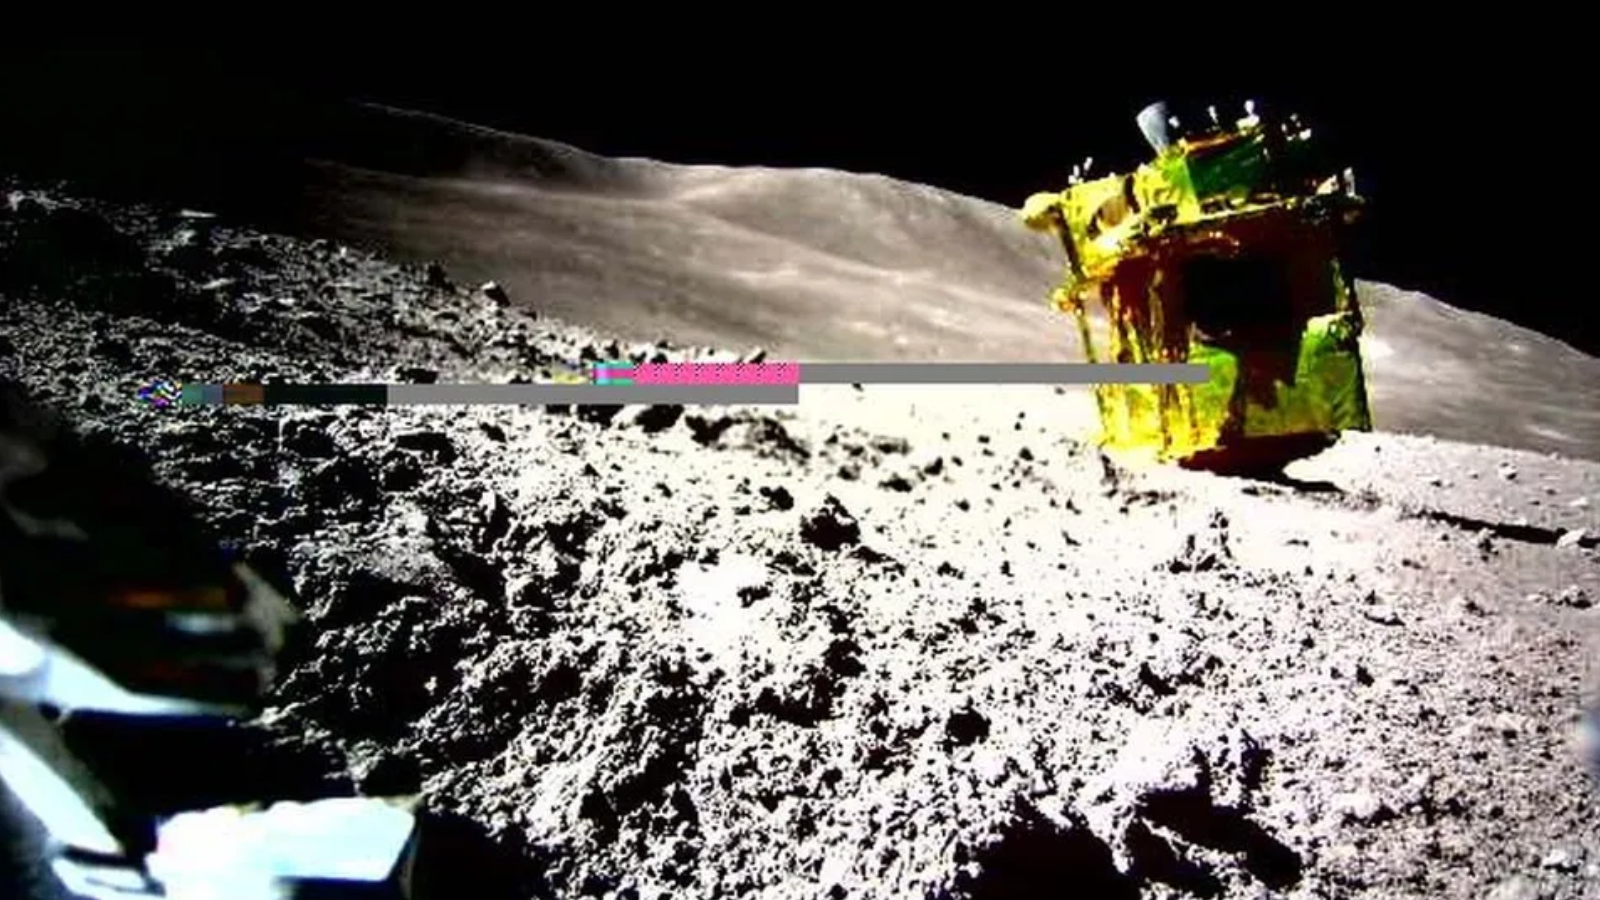 SLIM, gesehen von LEV-2 auf dem Mond nach der Landung auf seiner Nase